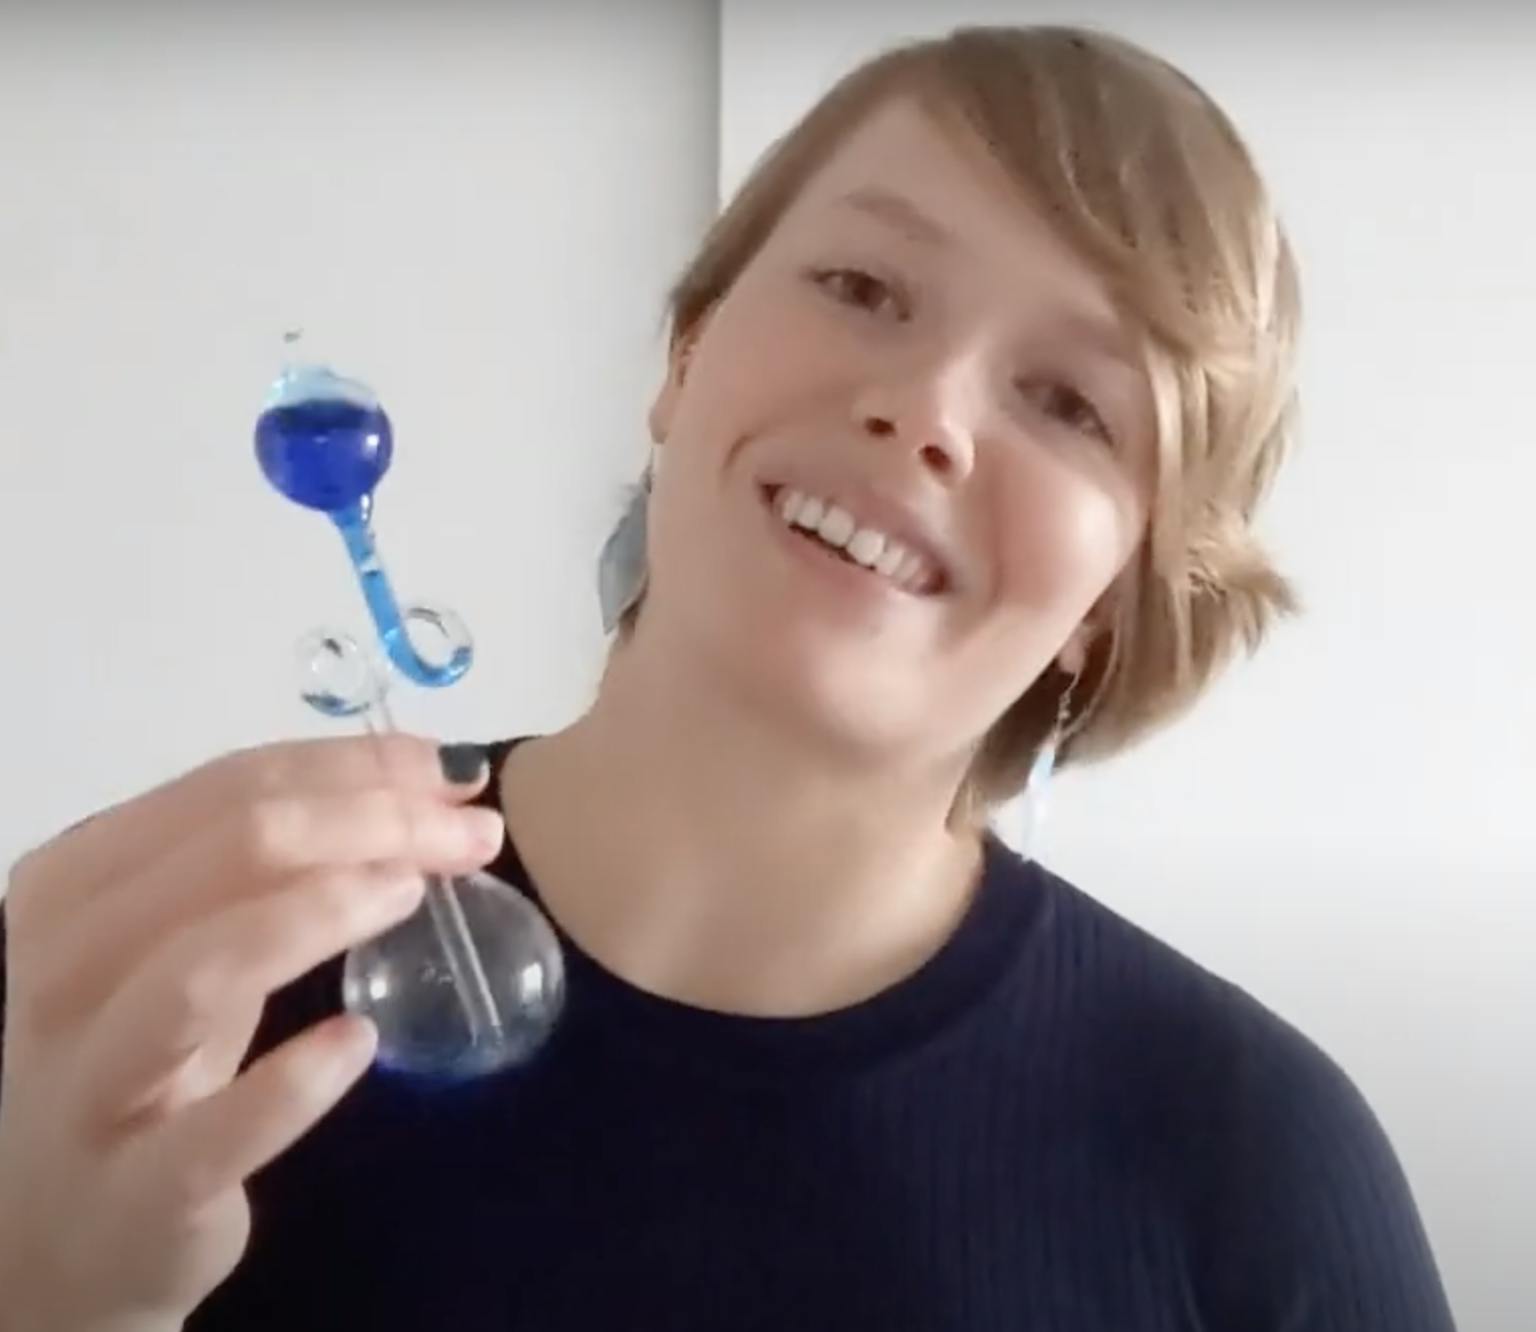 Een vrouw houdt een blauwe glazen fles in haar hand.